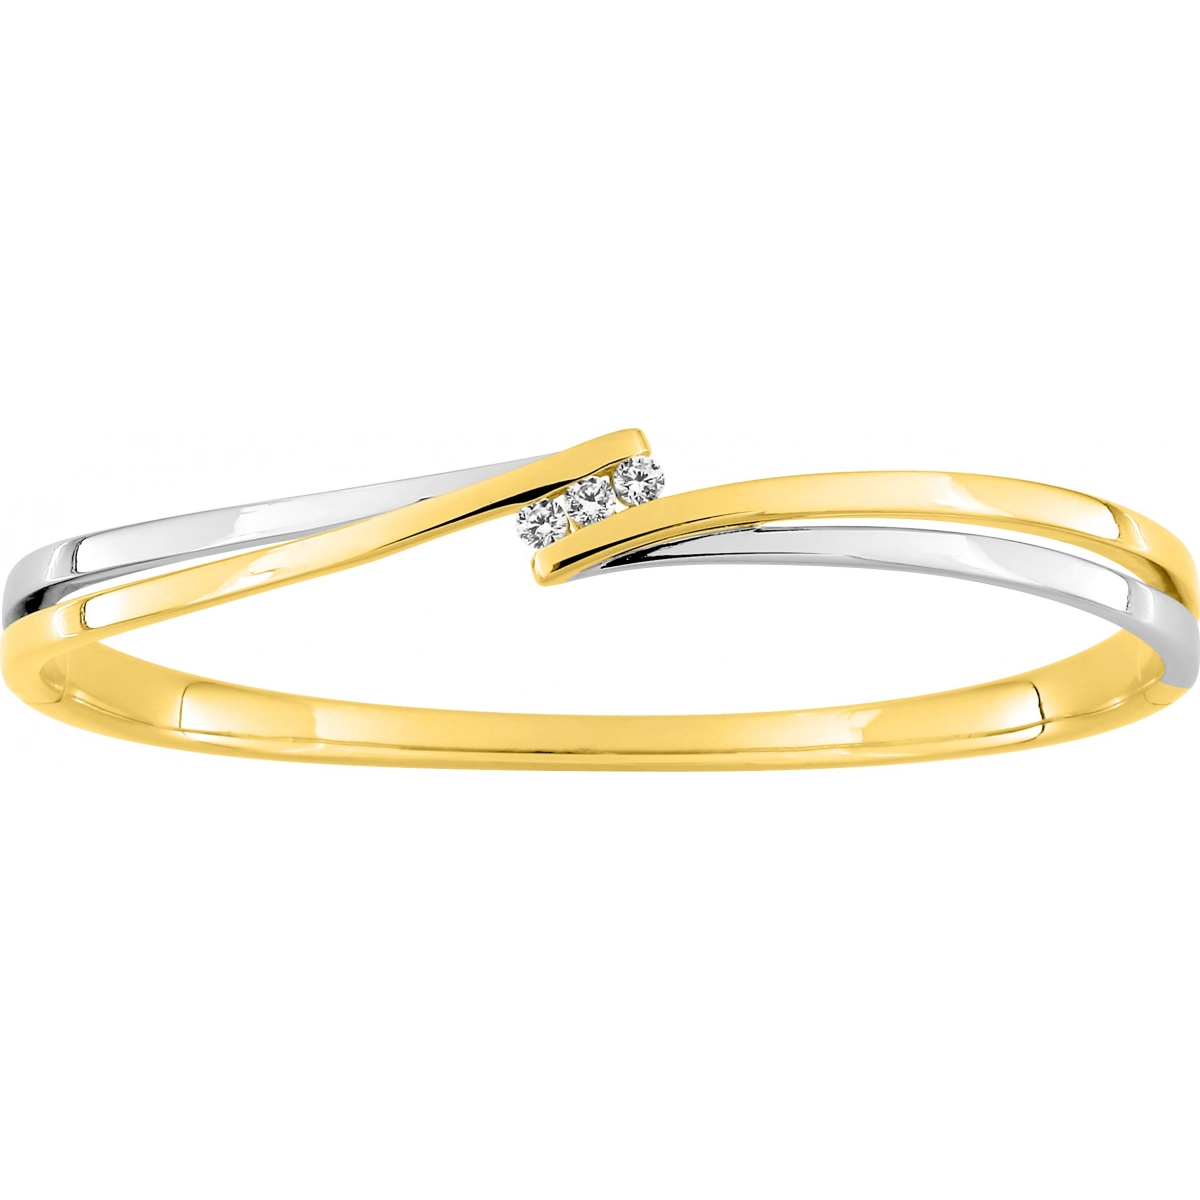 Bracelet w. cz gold plated Brass Lua Blanca  256978.9 